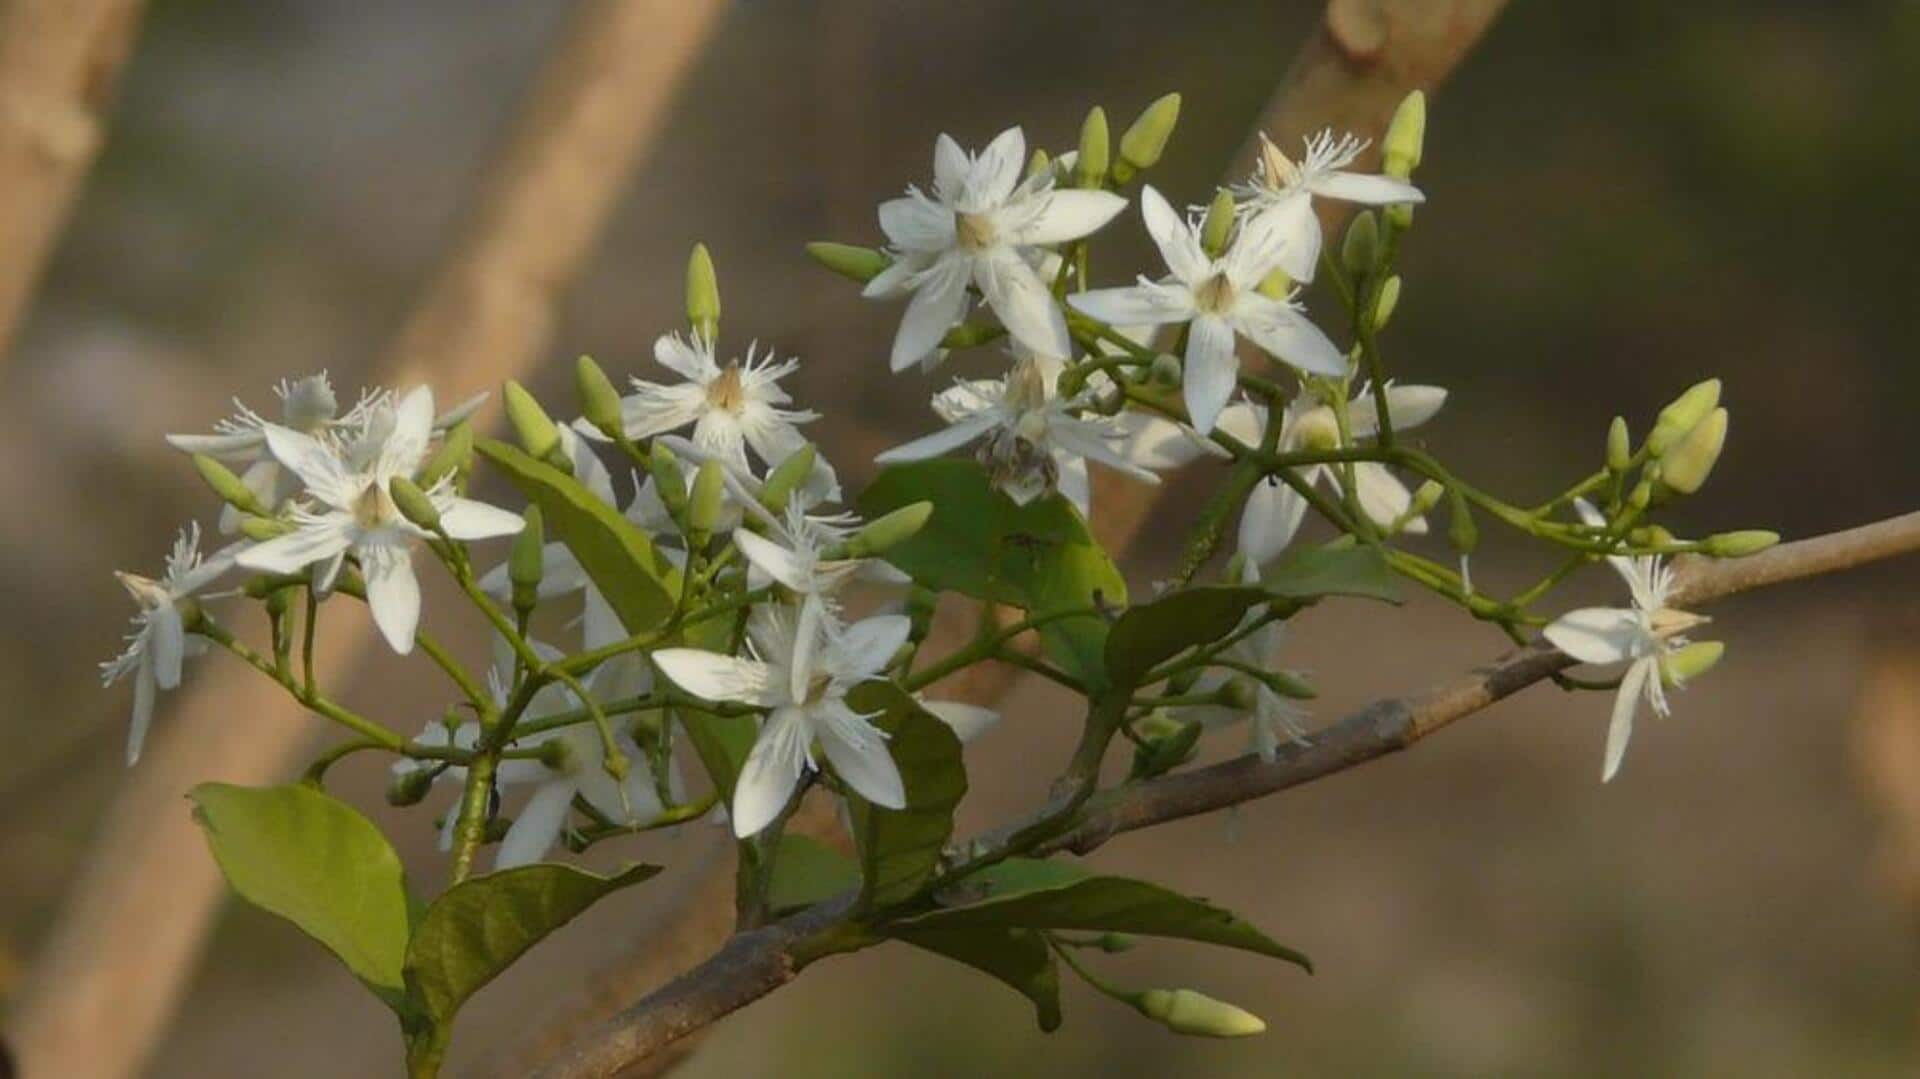 Kutaja: An Ayurvedic herb with stellar health benefits